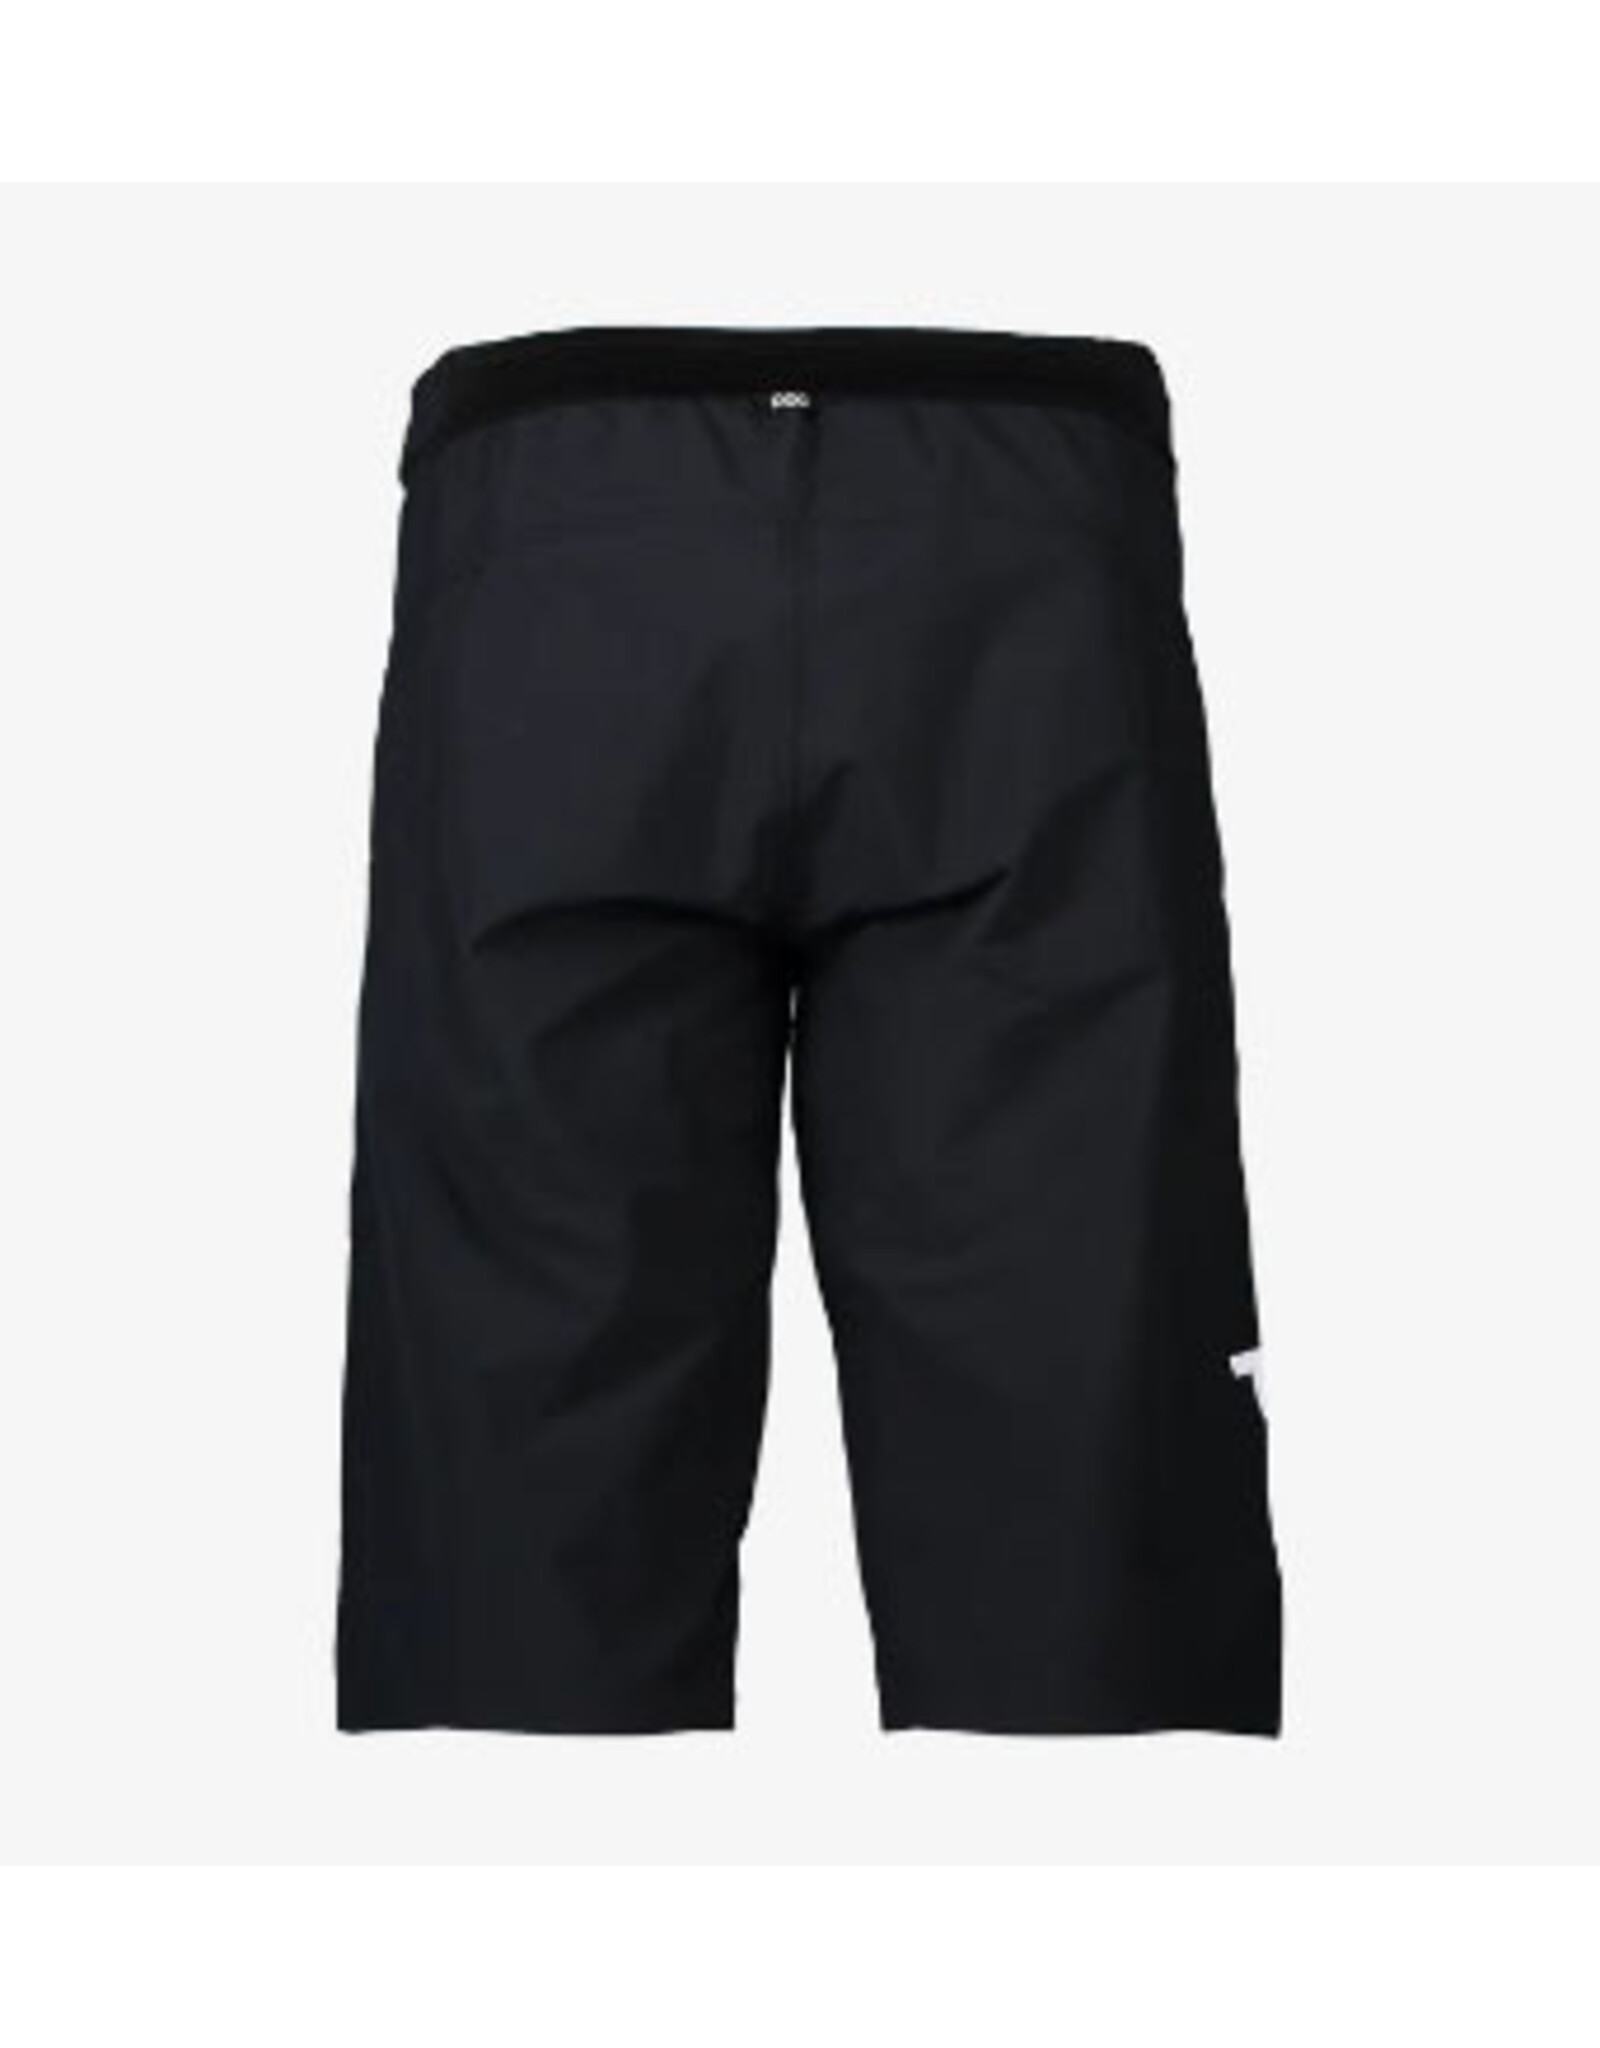 POC POC Essential Enduro Shorts Black